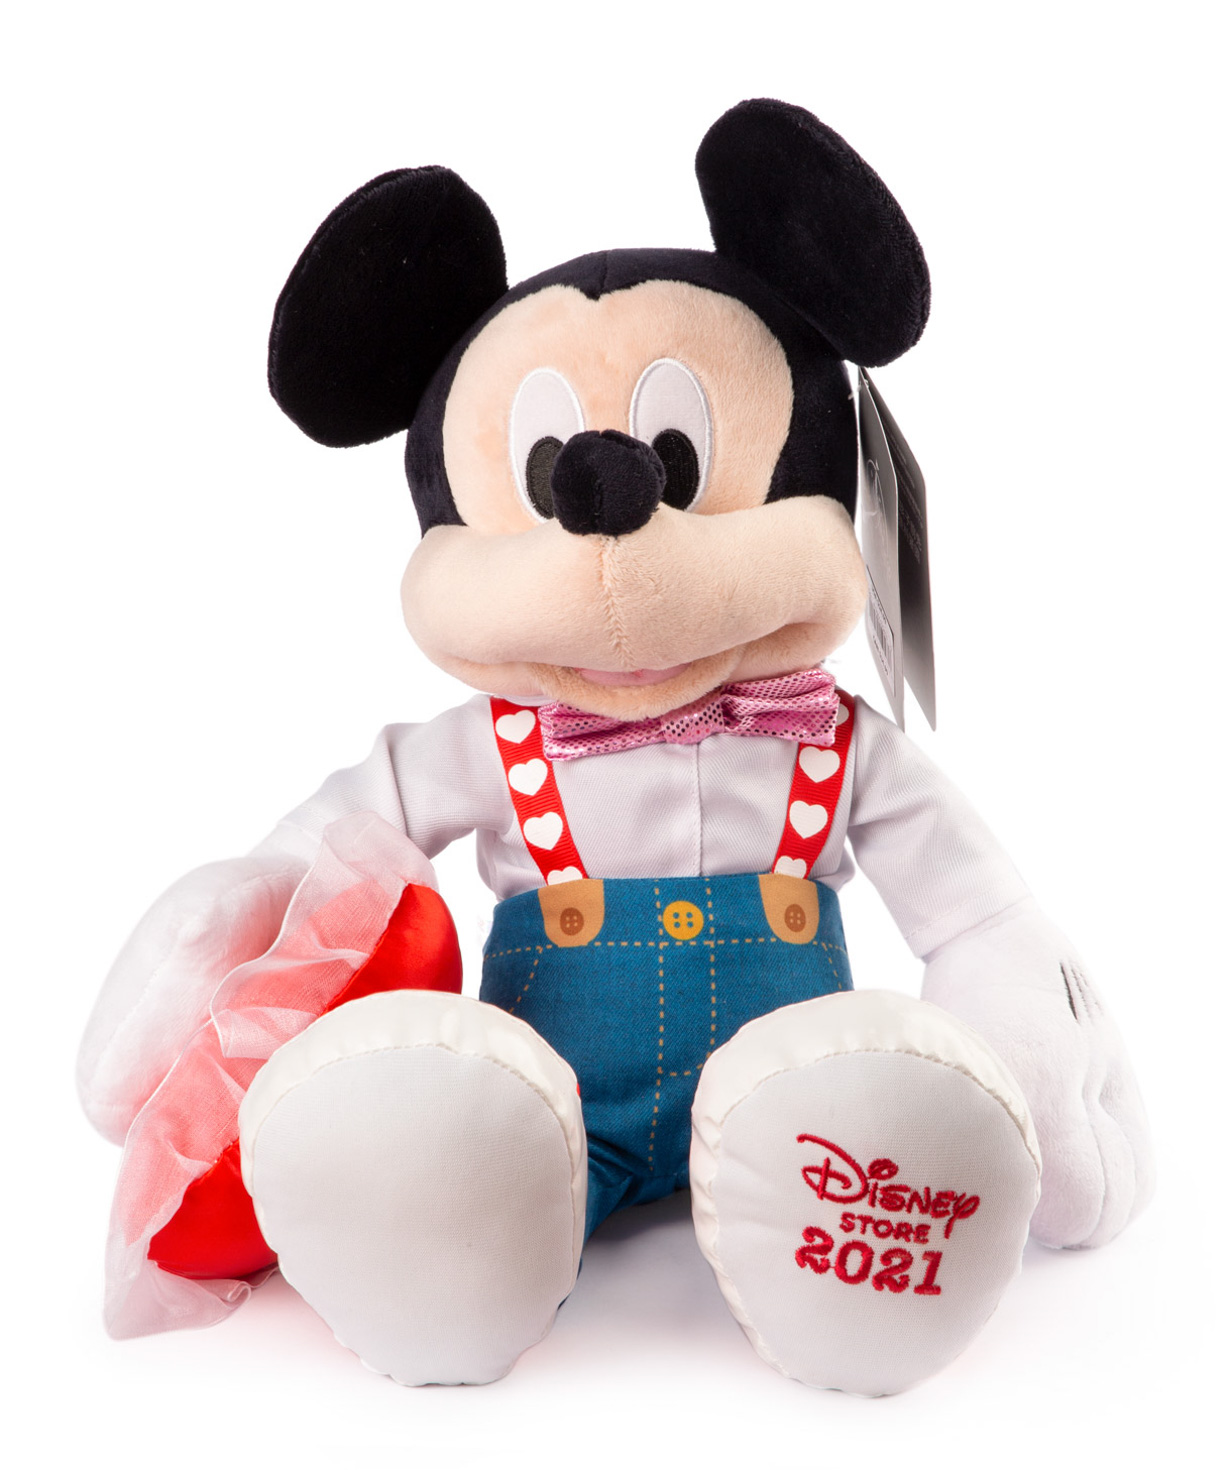 Toy Mickey Mouse plush, Disney